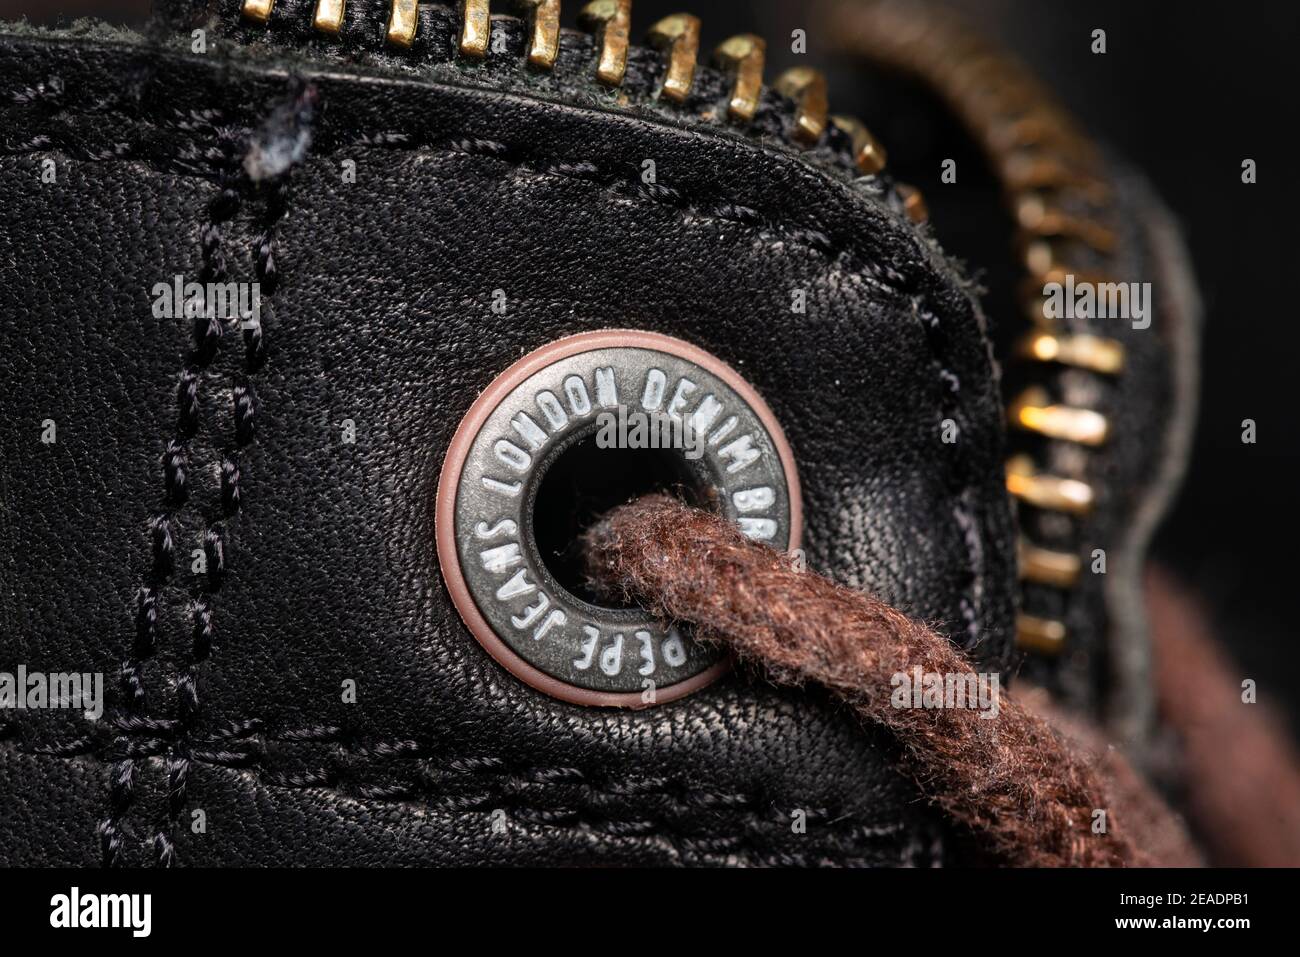 Pepe Jeans London Denim Brand scrittura sugli occhielli da scarpa di stivali da uomo in pelle nera primo piano dettaglio messa a fuoco selettiva Foto Stock